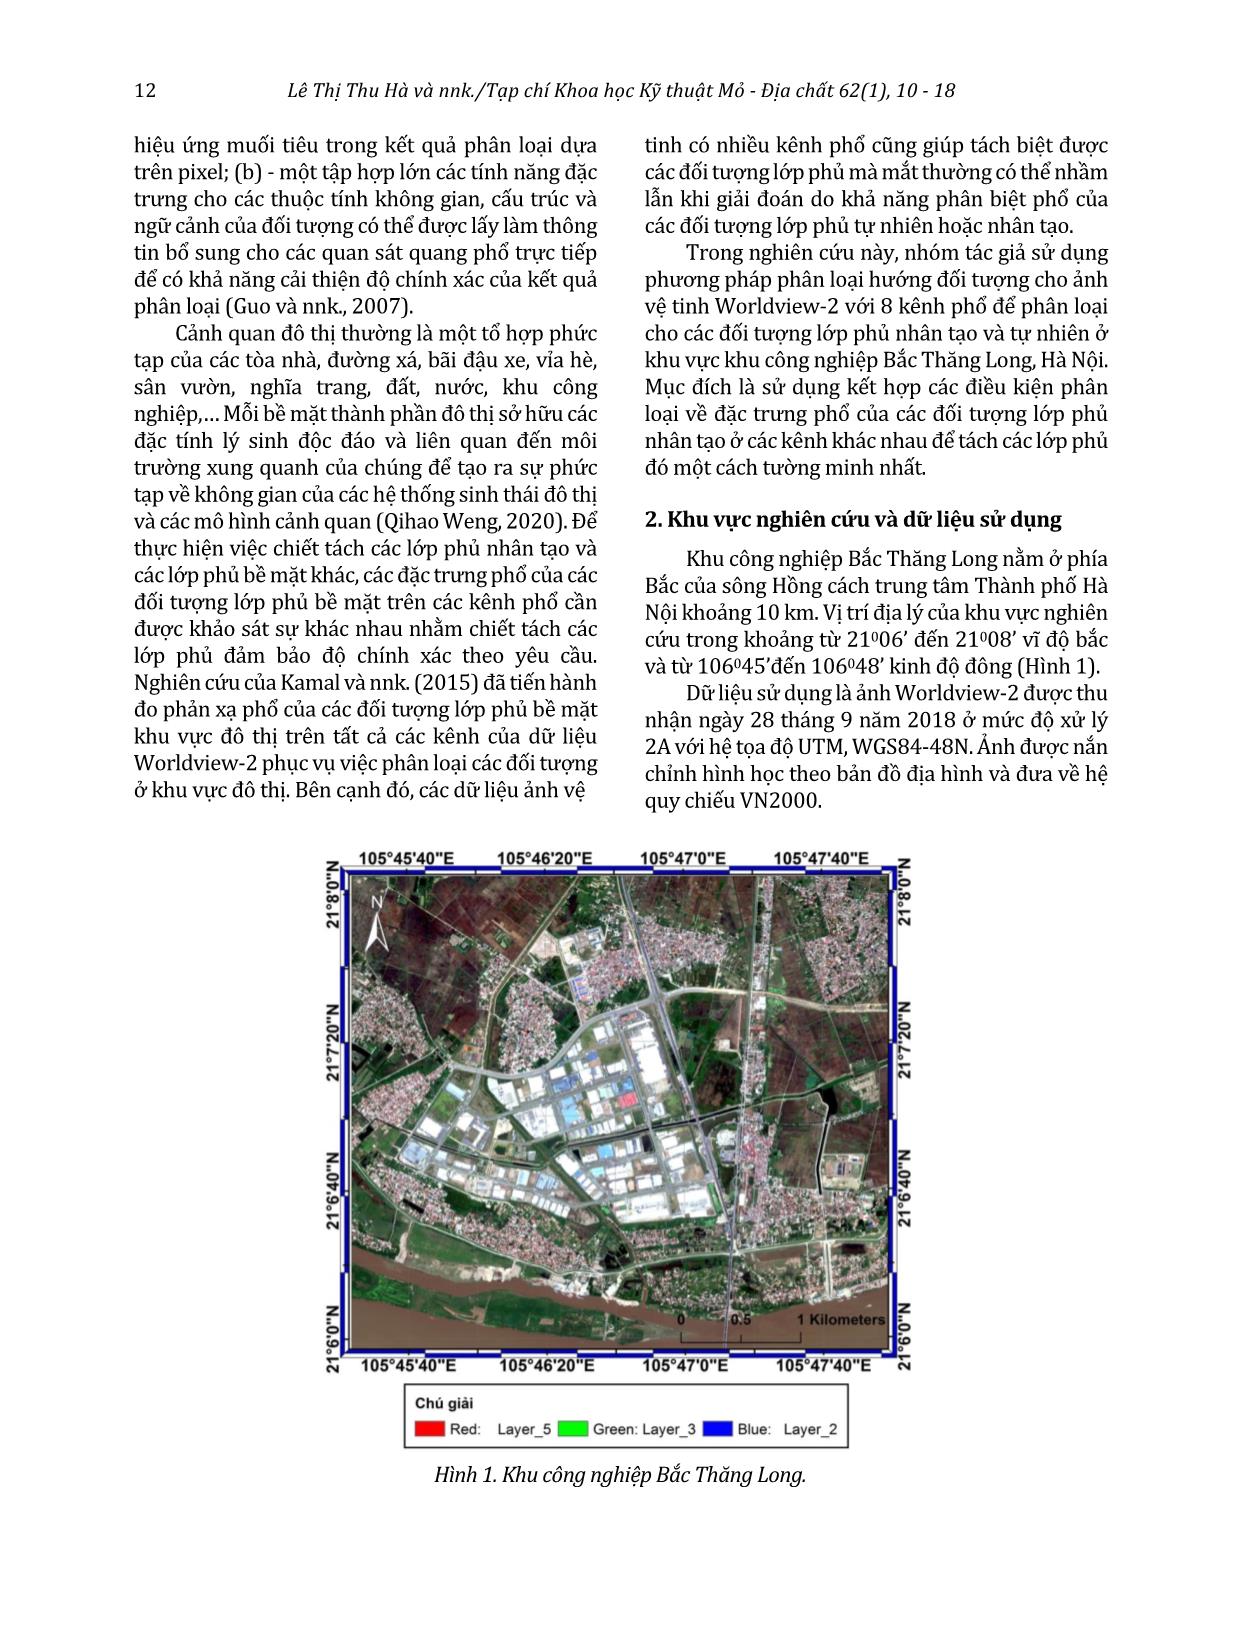 Phân loại lớp phủ bề mặt khu công nghiệp Bắc Thăng Long bằng phương pháp phân loại hướng đối tượng sử dụng dữ liệu ảnh vệ tinh độ phân giải cao Worldview-2 trang 3